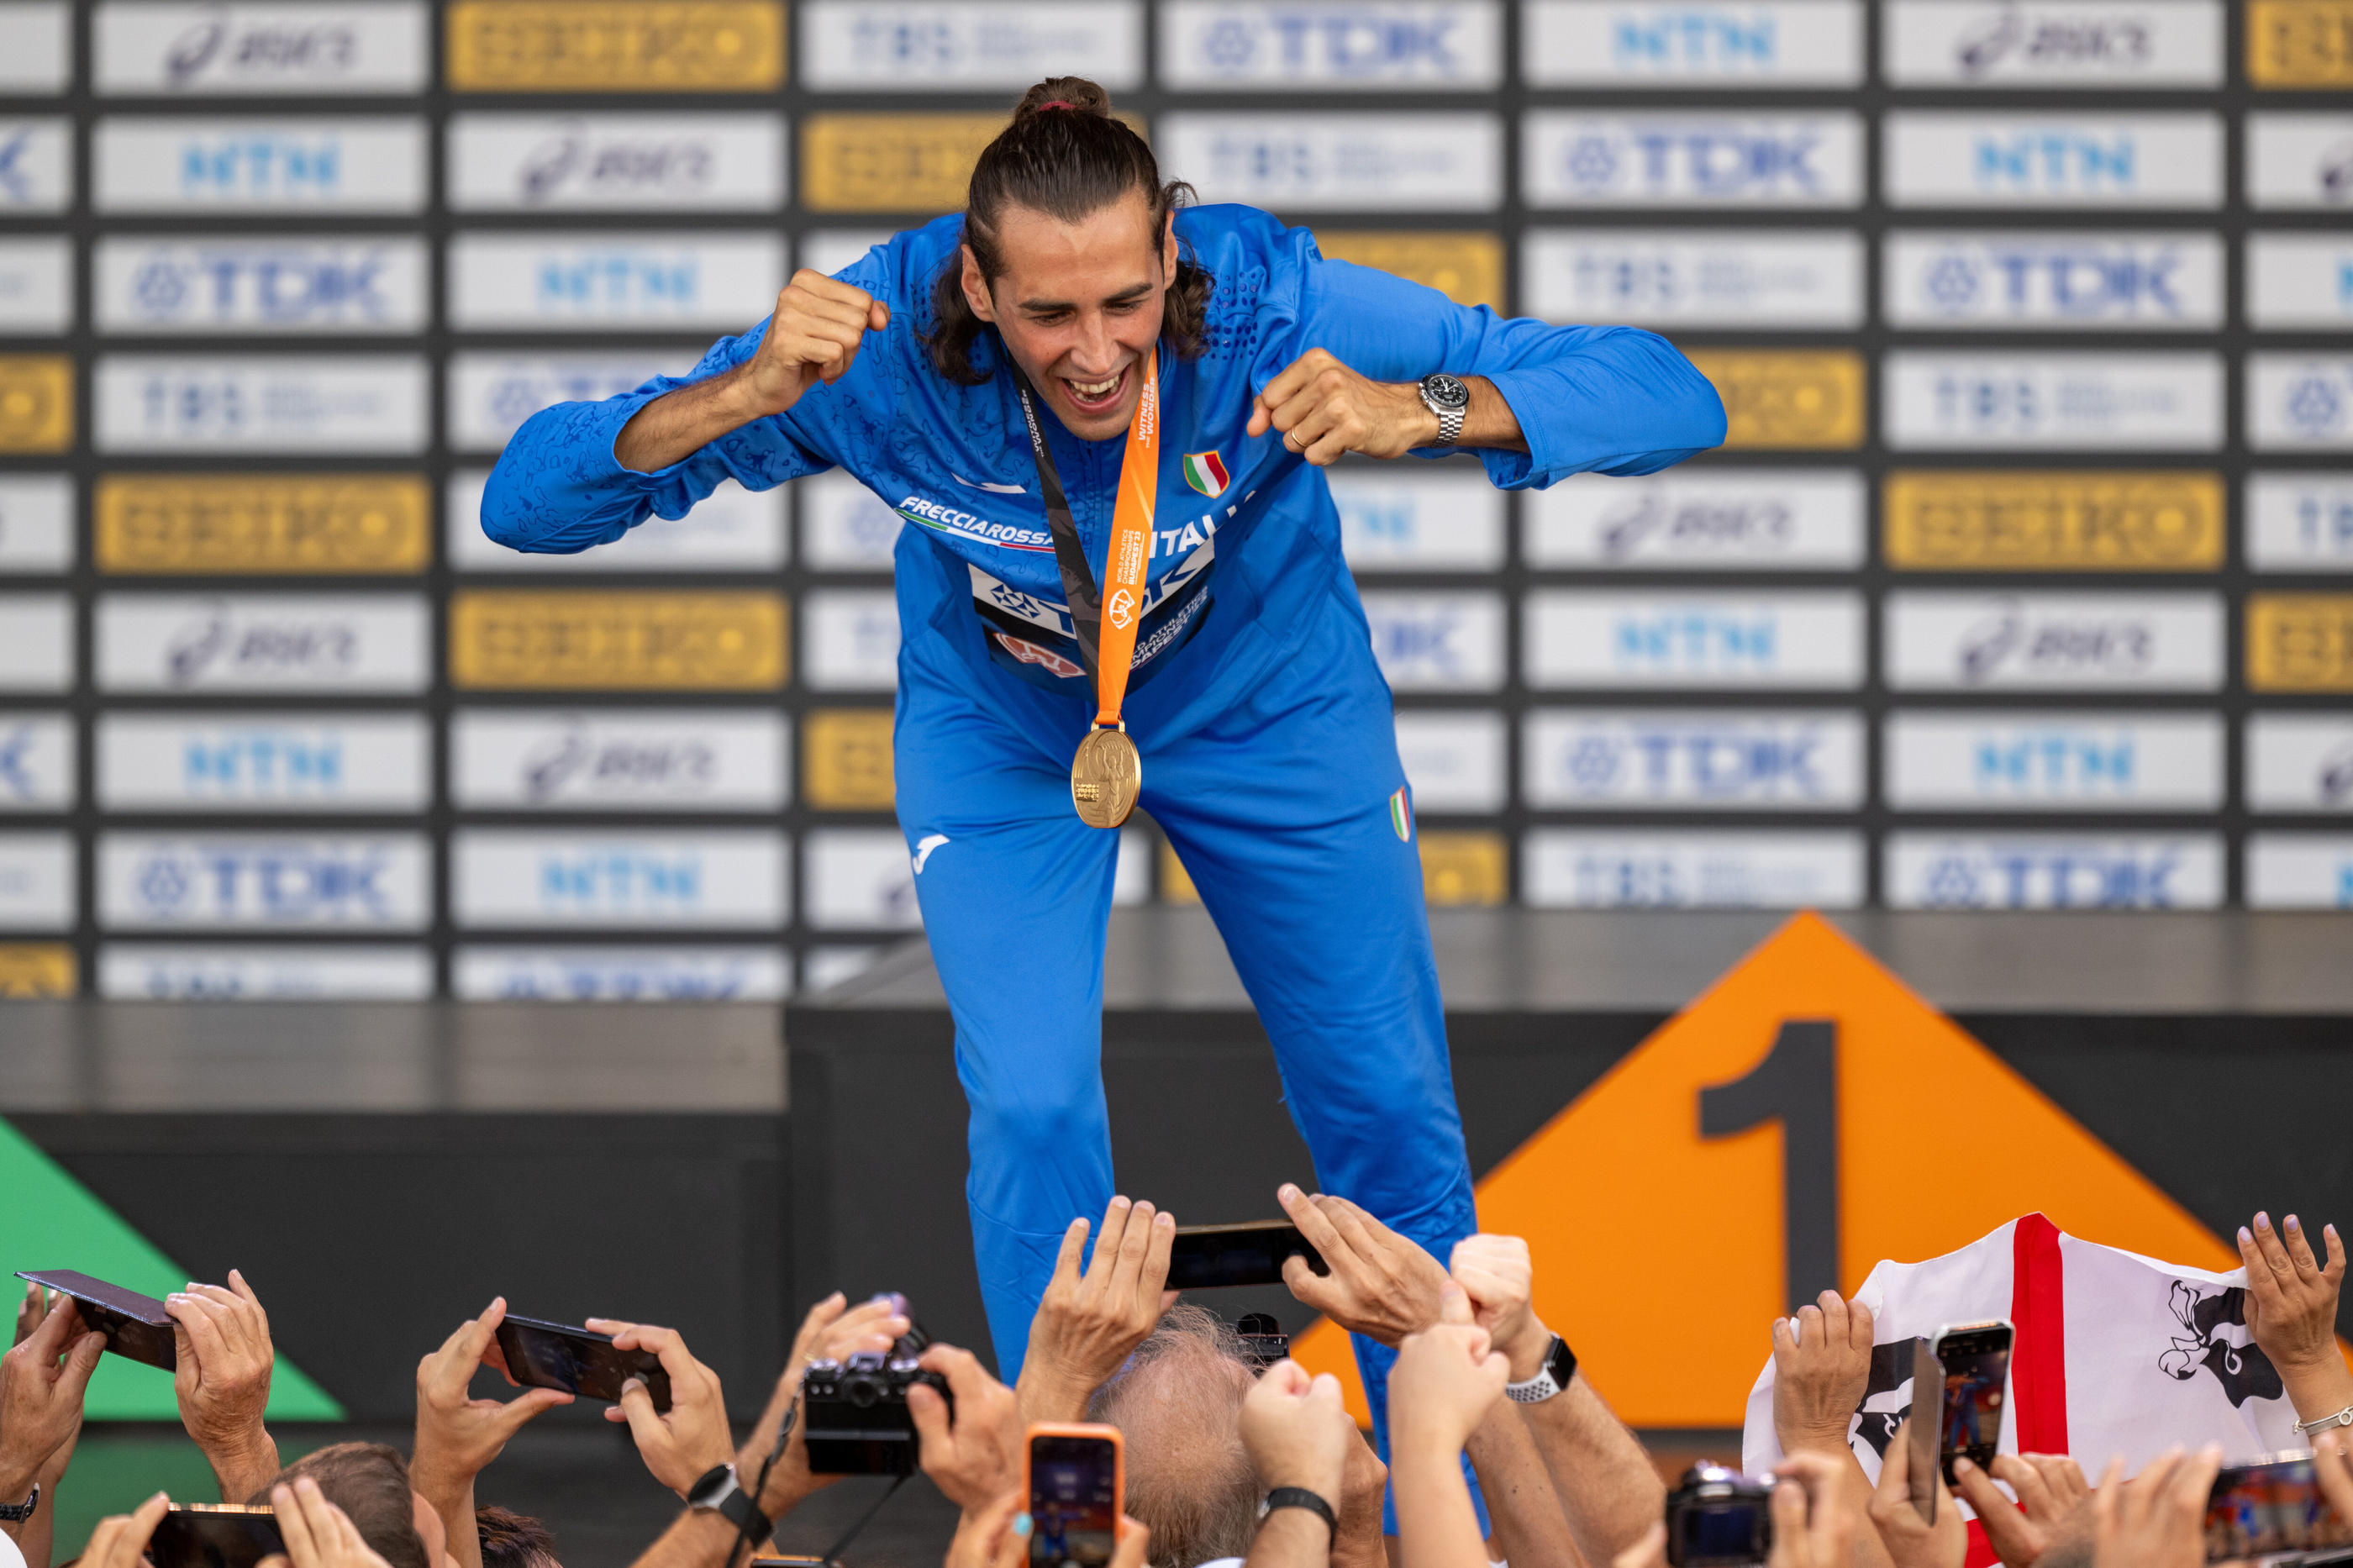 Le sauteur en hauteur Gianmarco Tamberi a remporté la médaille d'or aux Championnats du monde l'été dernier, à Budapest. Icon sport